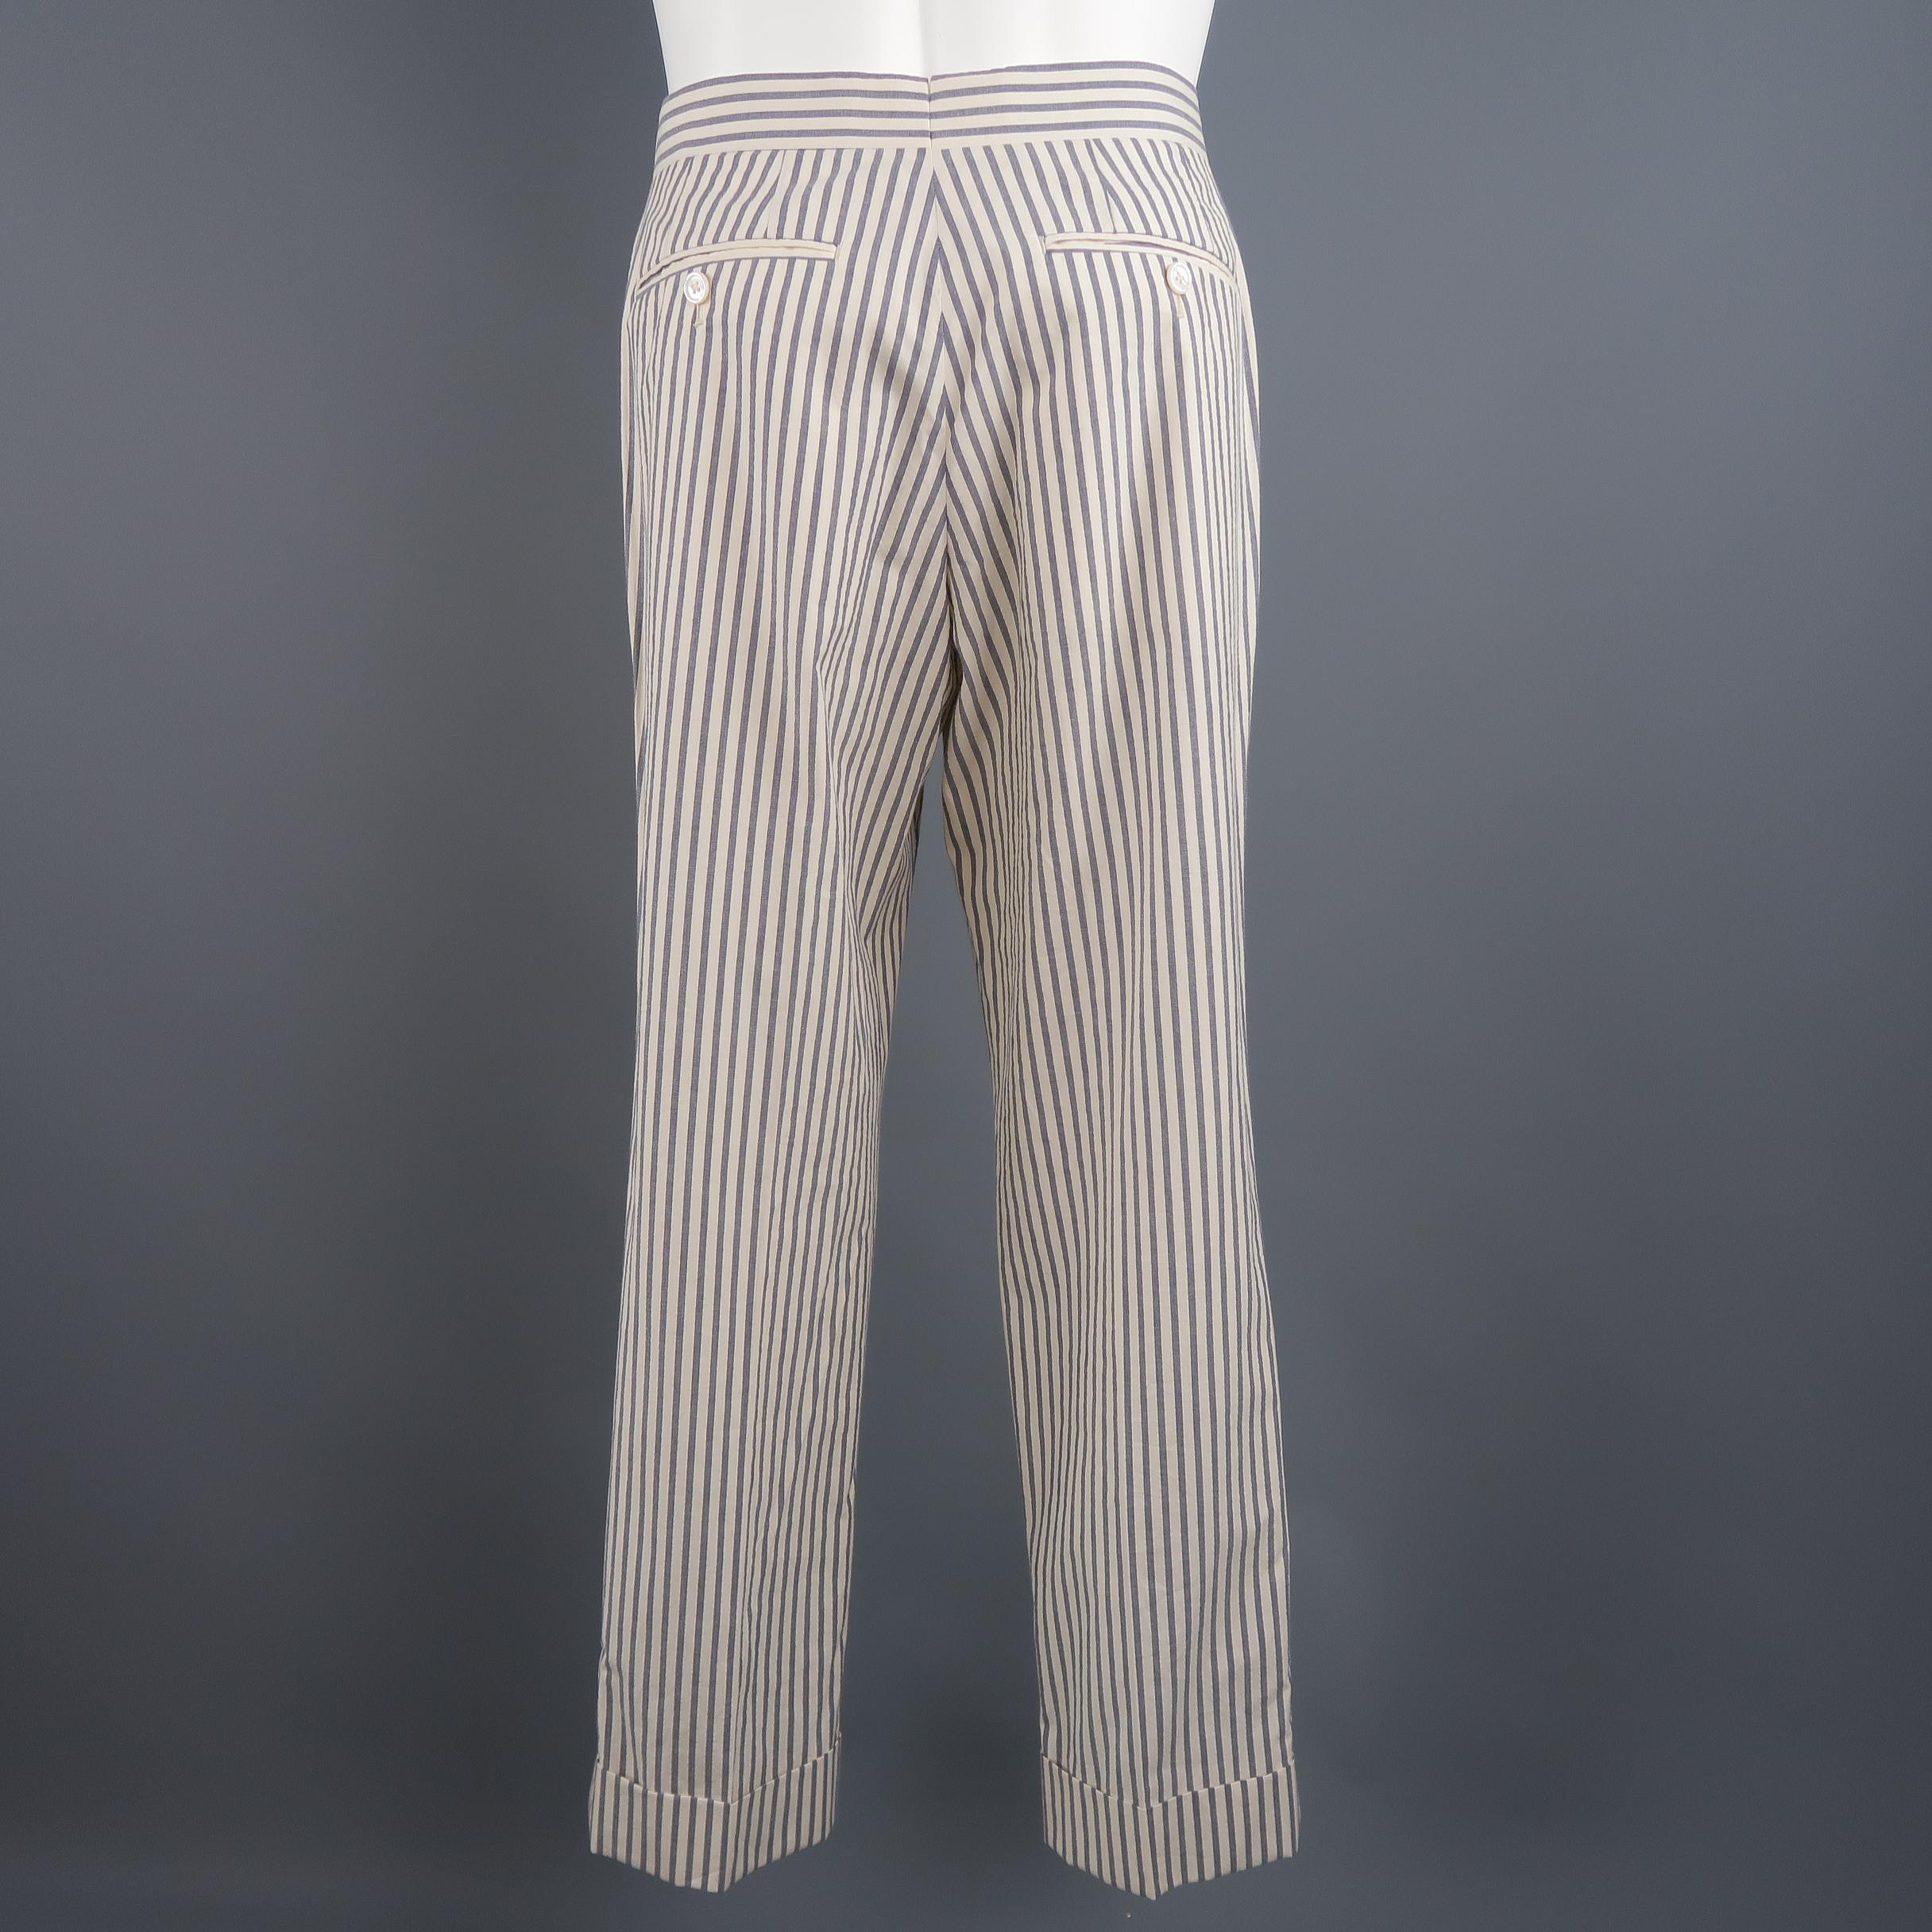 Men's Black Fleece Beige and Gray Stripe Cotton Cuffed Pants